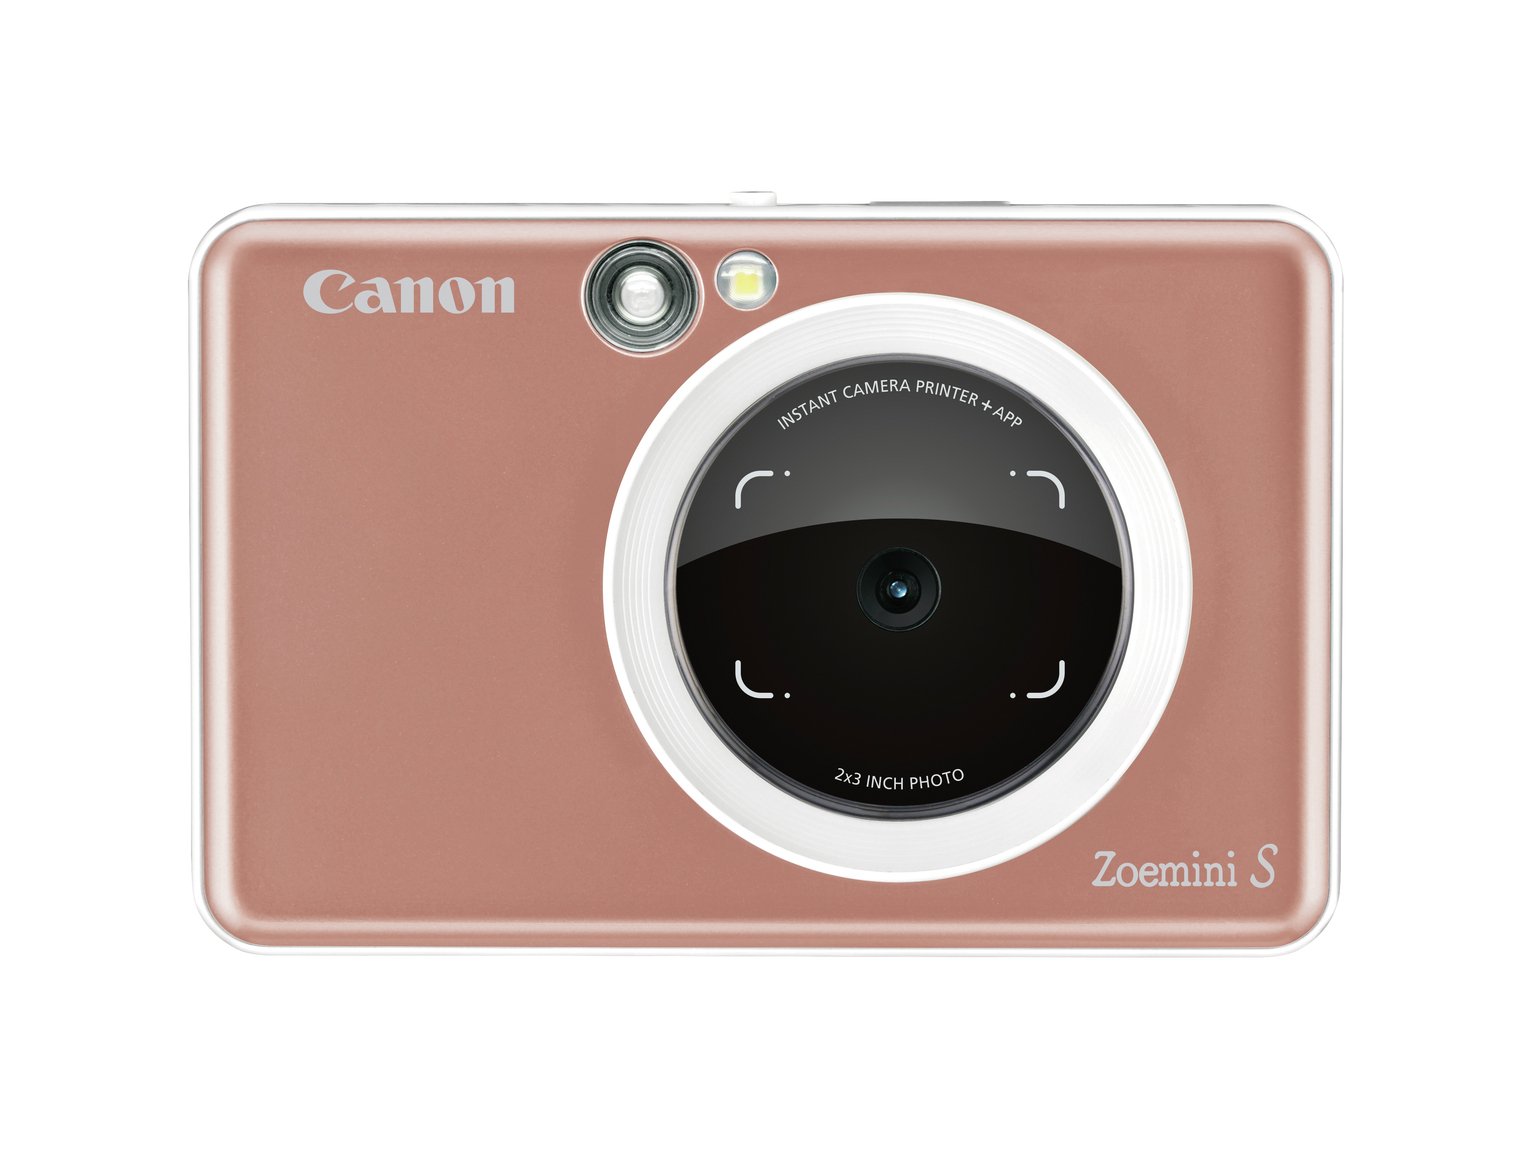 Canon Zoemini S Photo Printer Review